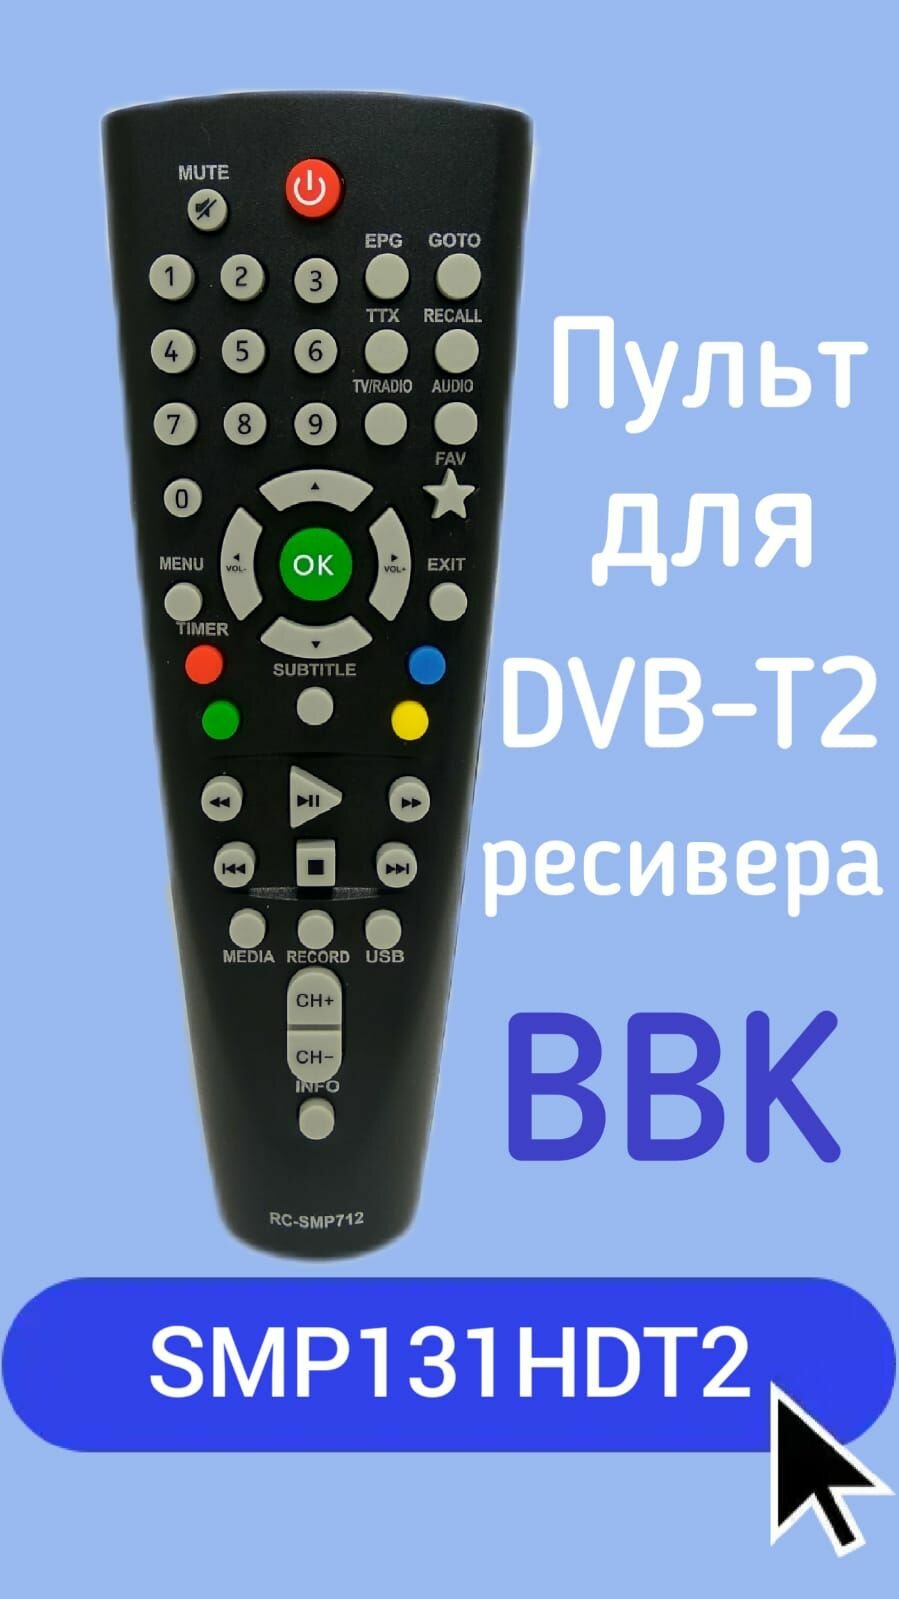 Пульт для DVB-T2-ресивера BBK SMP131HDT2